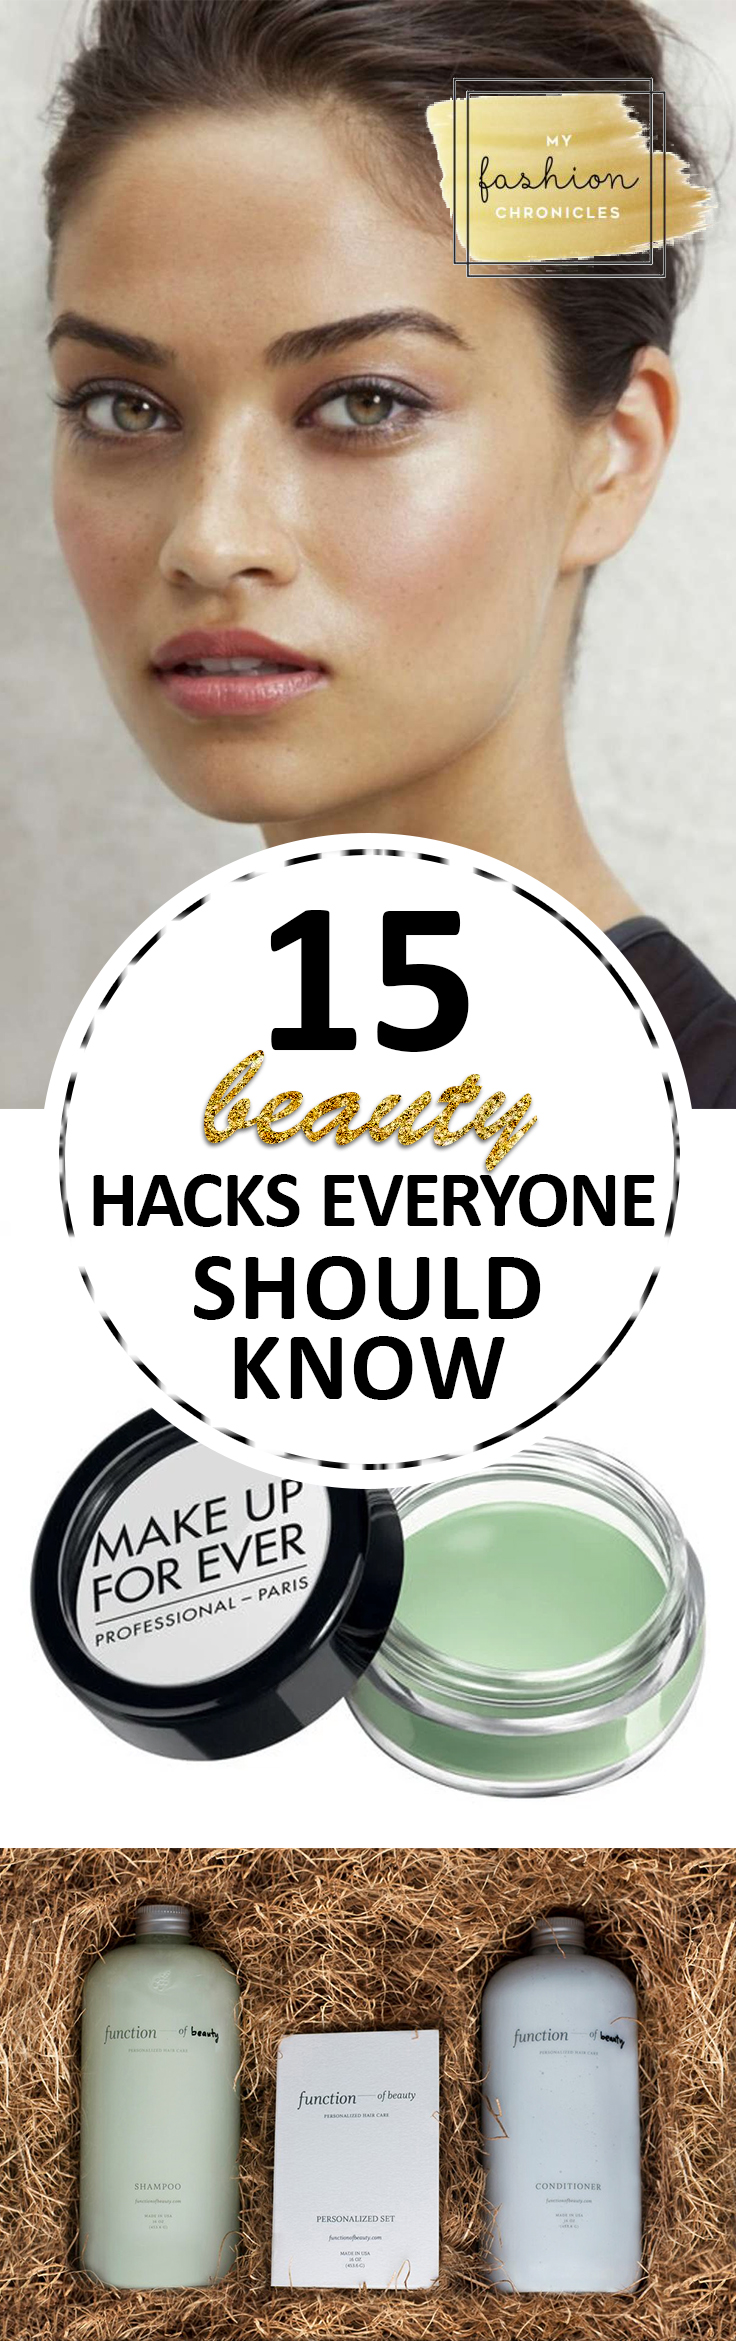 Beauty Hacks, Hacks, Life Hacks, Life Tips, Makeup Tips and Tricks, Quick Makeup Tricks, Easy Makeup Tips, Last Minute Makeup Tips, Last Minute Beauty Tips, Popular Pin 